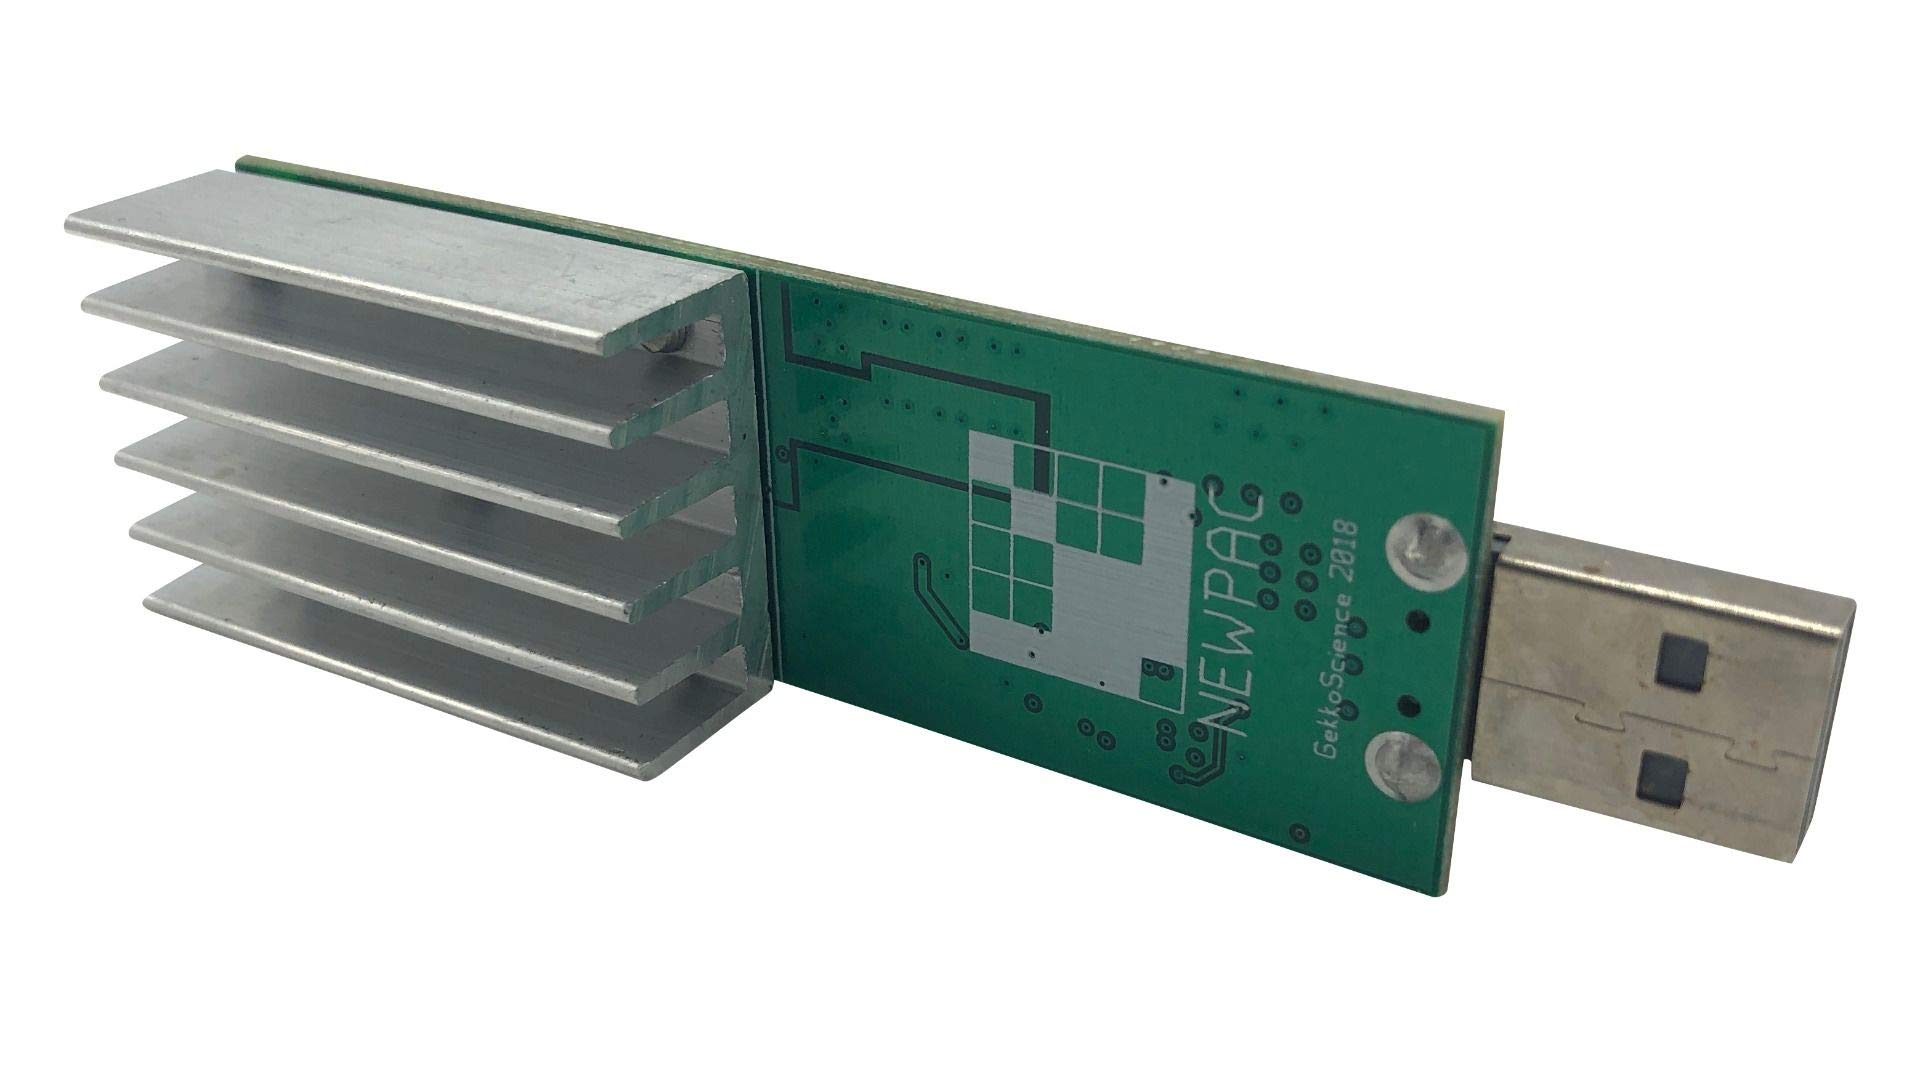 USB-Stick Miner GekkoScience 2Pac GH/s (33 GH/s max.)